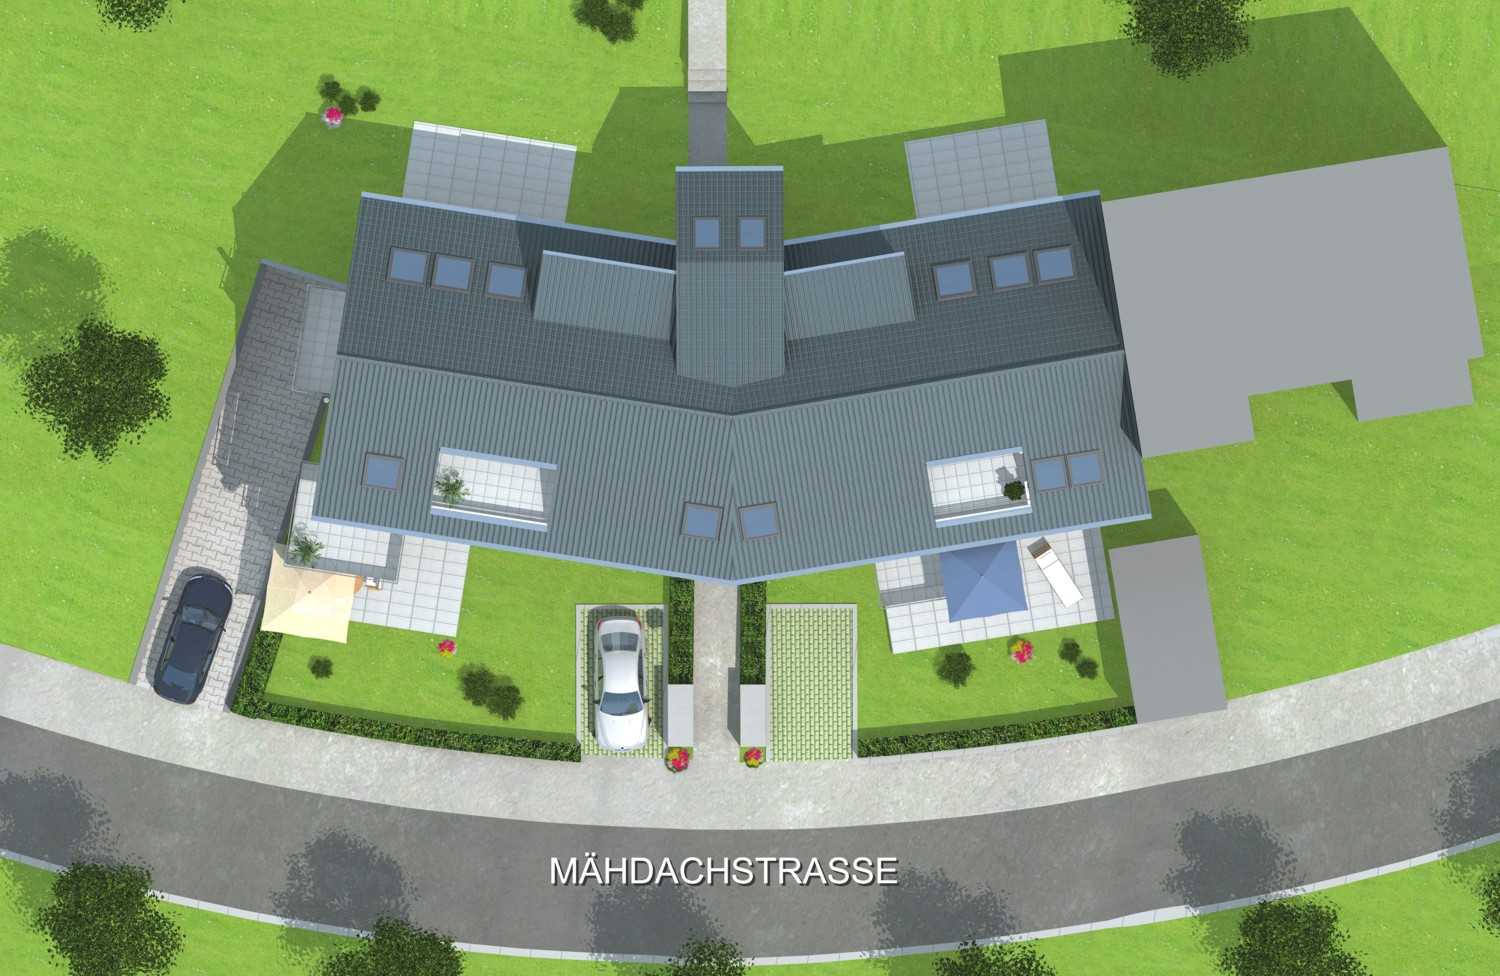 Architekturvisualisierung 3D Draufsicht und Lageplan Neubau von 2 Mehrfamilienhäusern in Mähdachstrasse / Stuttgart für SAS Bauträger GmbH Waiblingen (Jahr 2012)